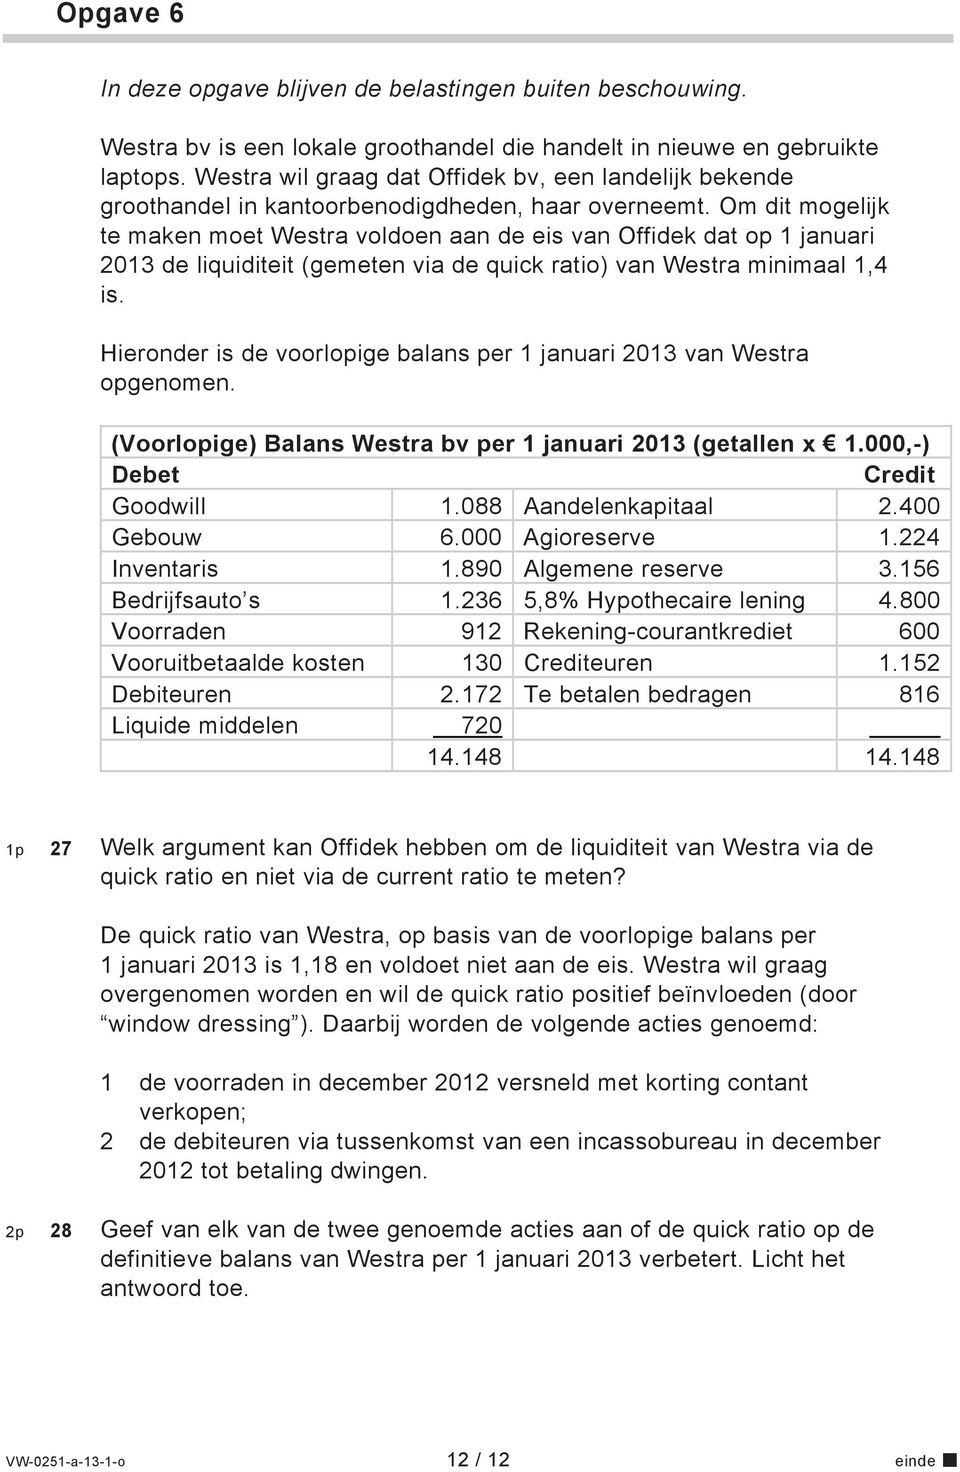 Om dit mogelijk te maken moet Westra voldoen aan de eis van Offidek dat op 1 januari 2013 de liquiditeit (gemeten via de quick ratio) van Westra minimaal 1,4 is.